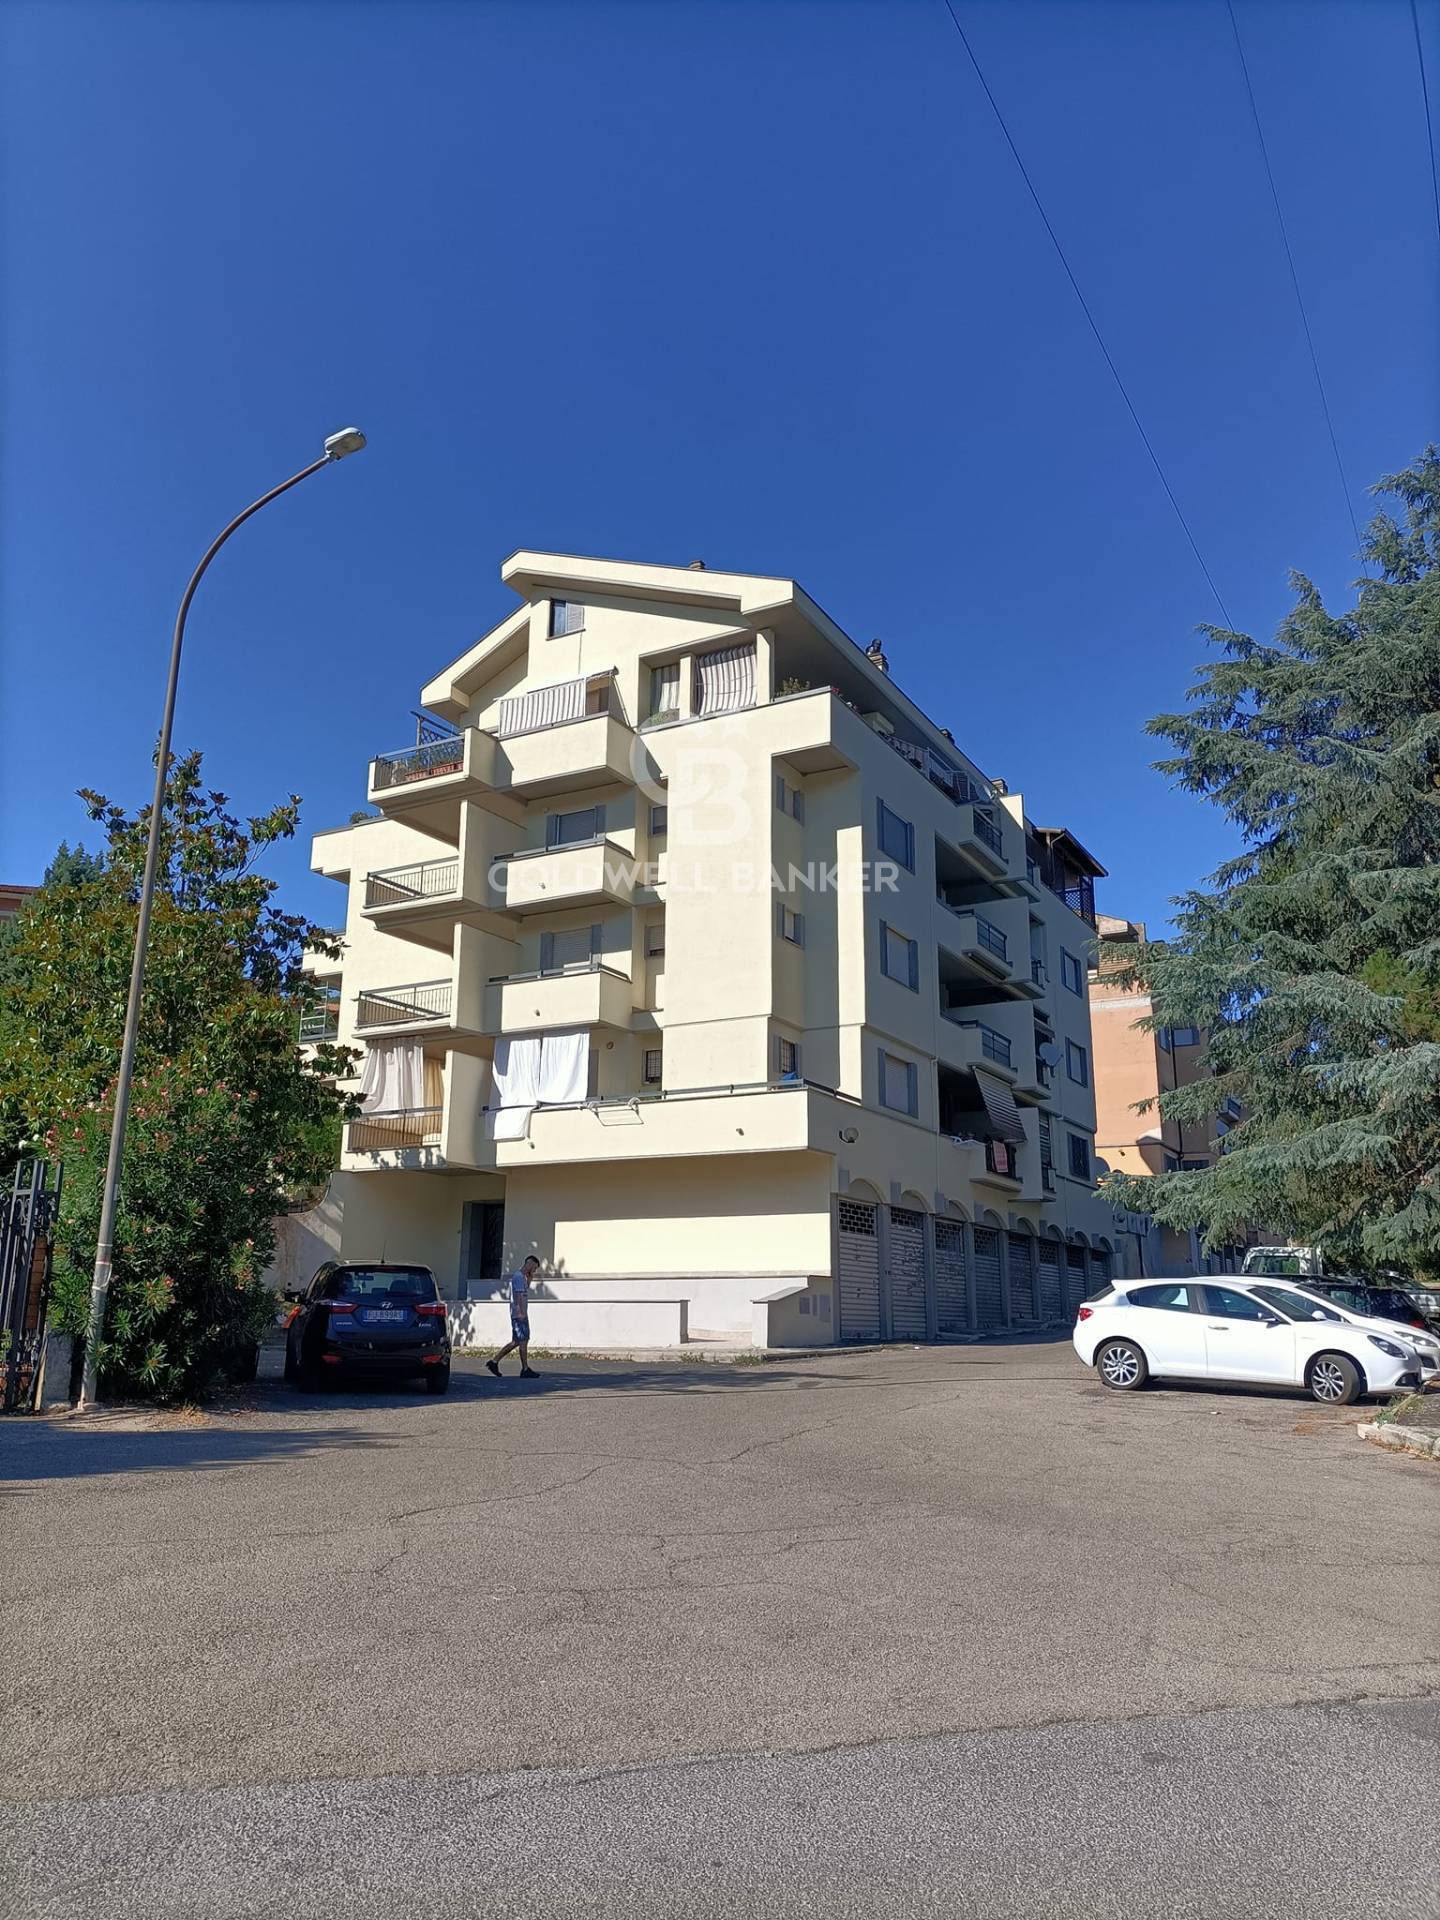 Appartamento in vendita a Capranica, 4 locali, prezzo € 145.000 | PortaleAgenzieImmobiliari.it